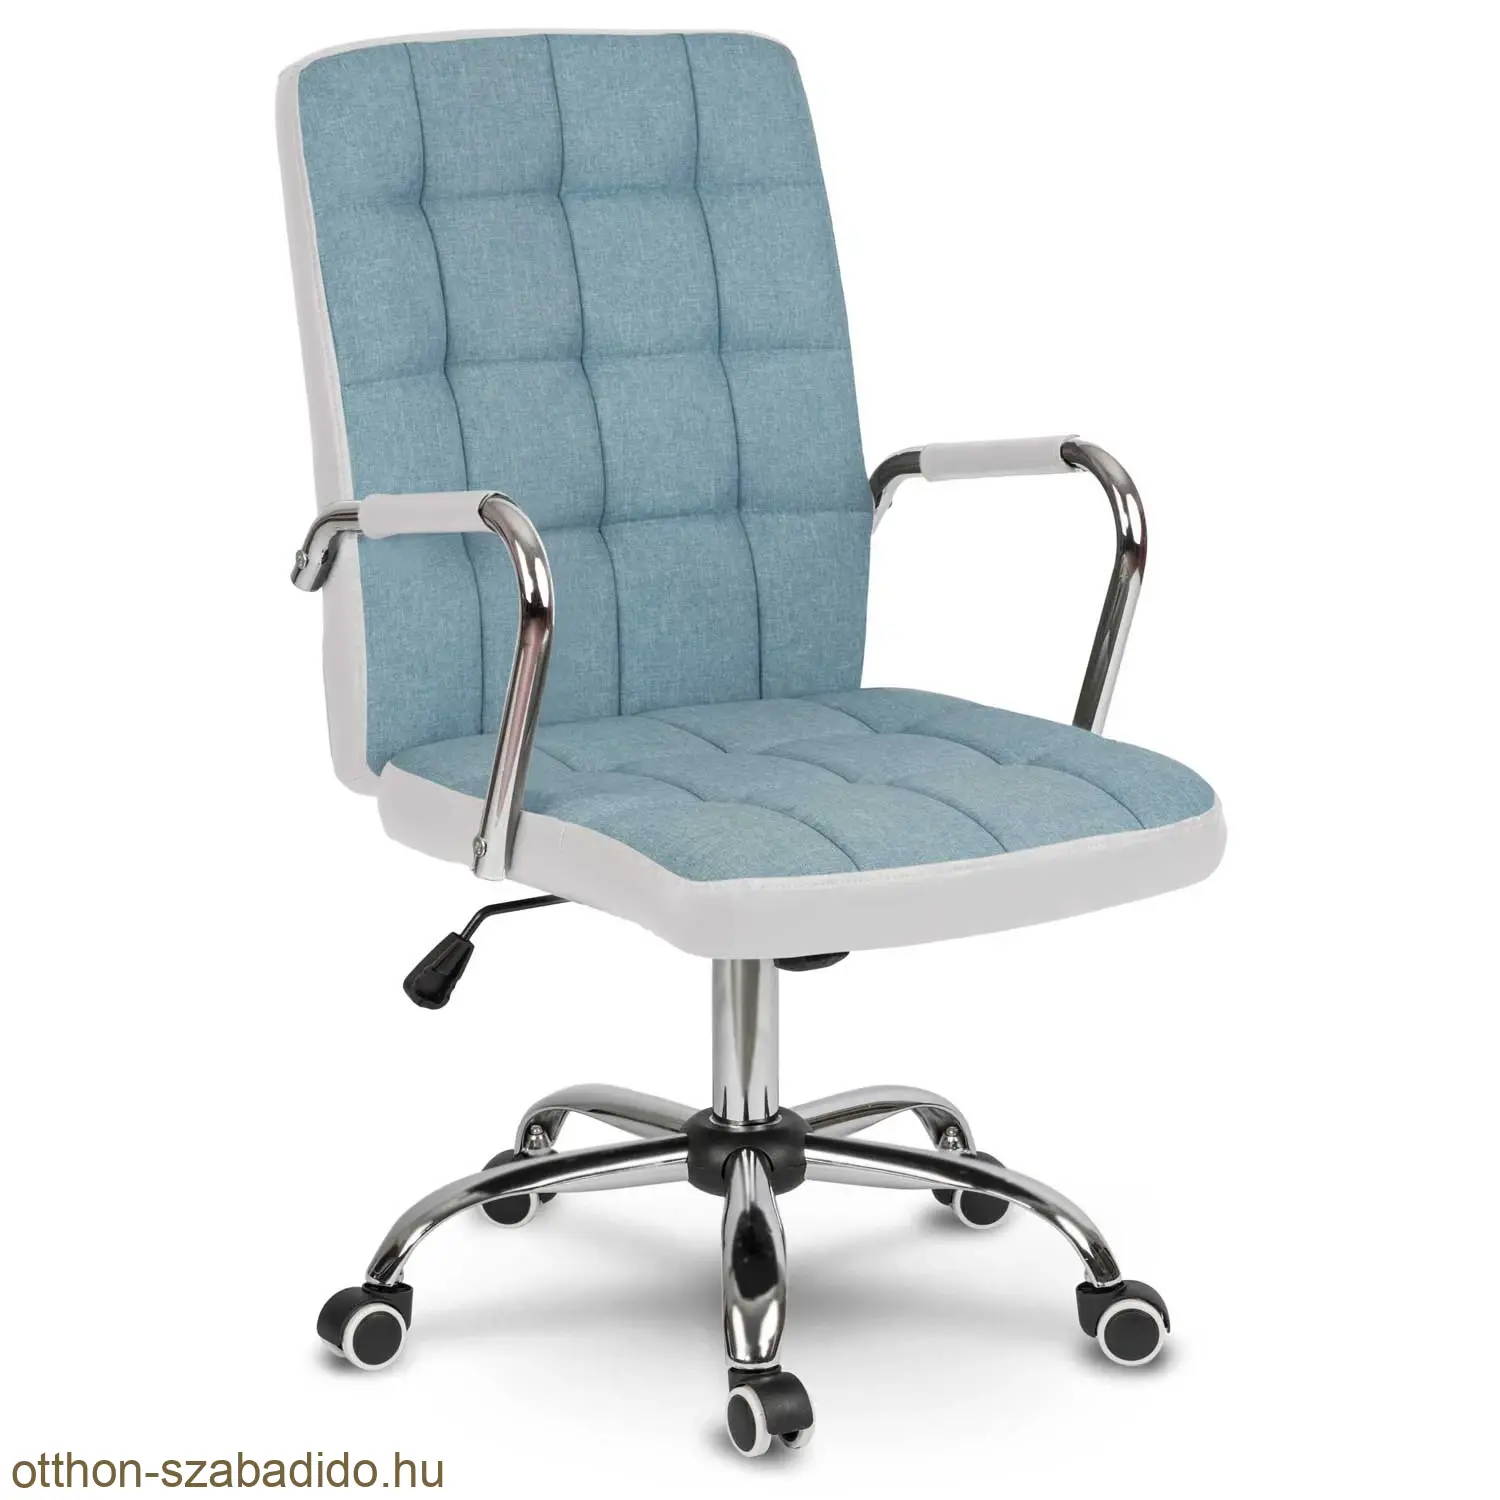 SOFOTEL  szövet irodai szék Benton kék-fehér